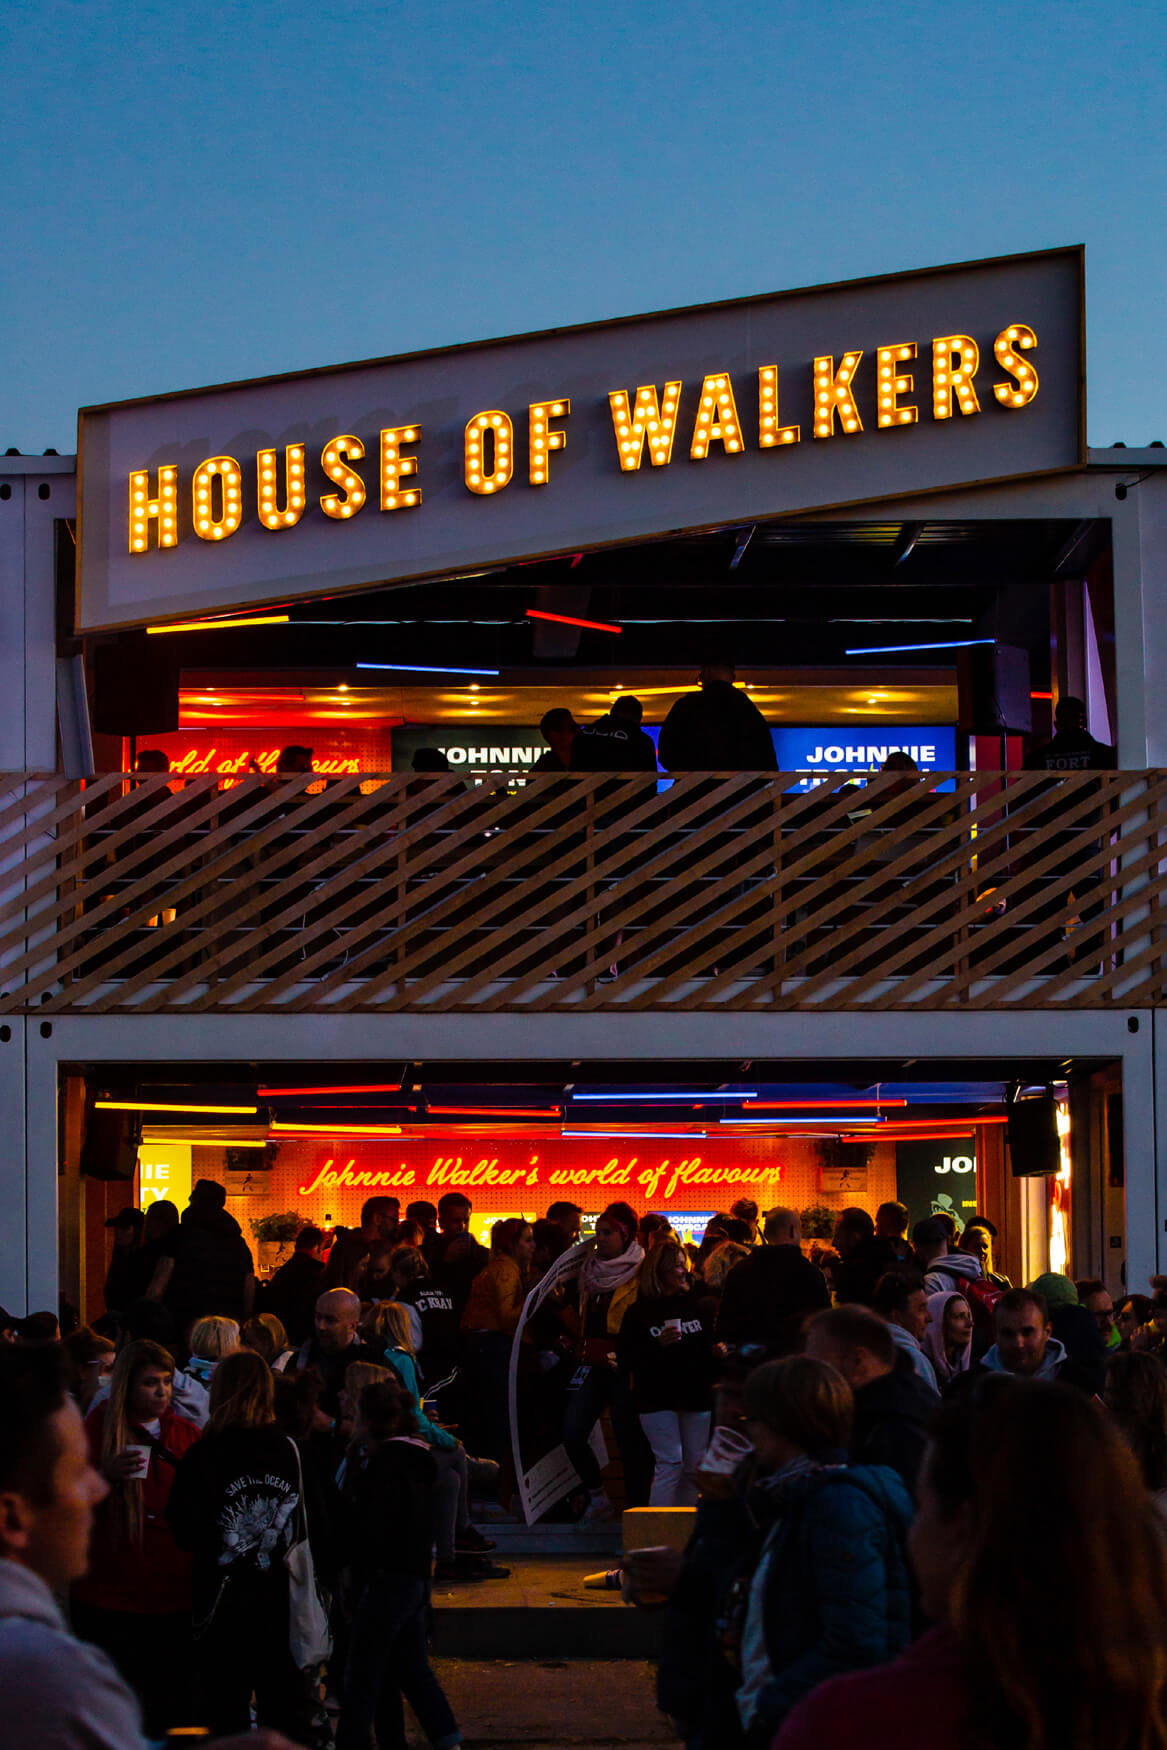 House Of walkers - House of Walkers - litery z blachy wypełnione żarówkami nad wejściem